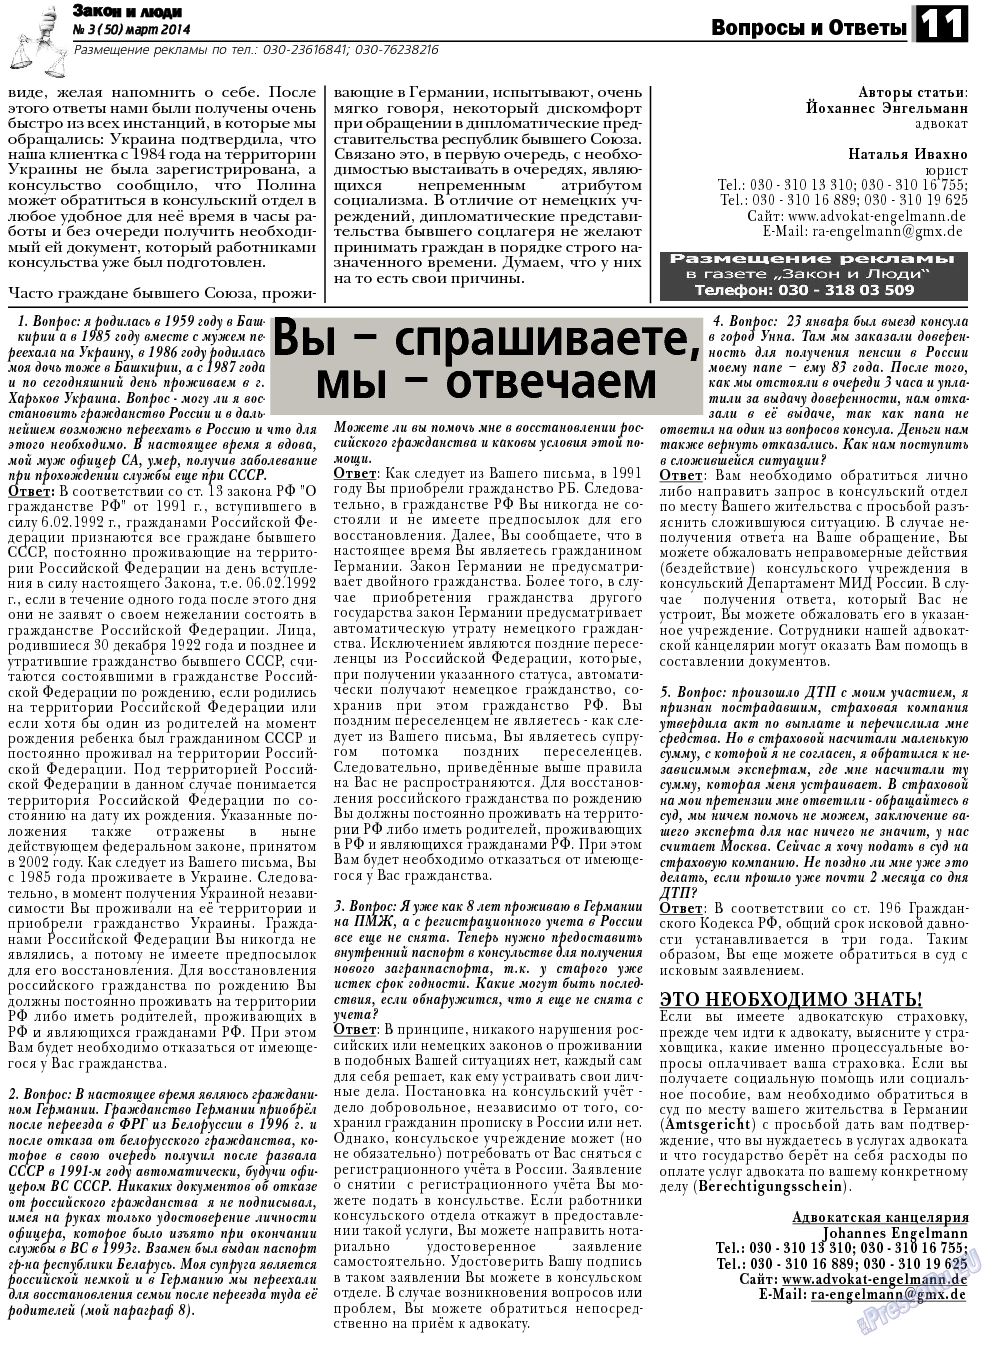 Закон и люди, газета. 2014 №3 стр.11